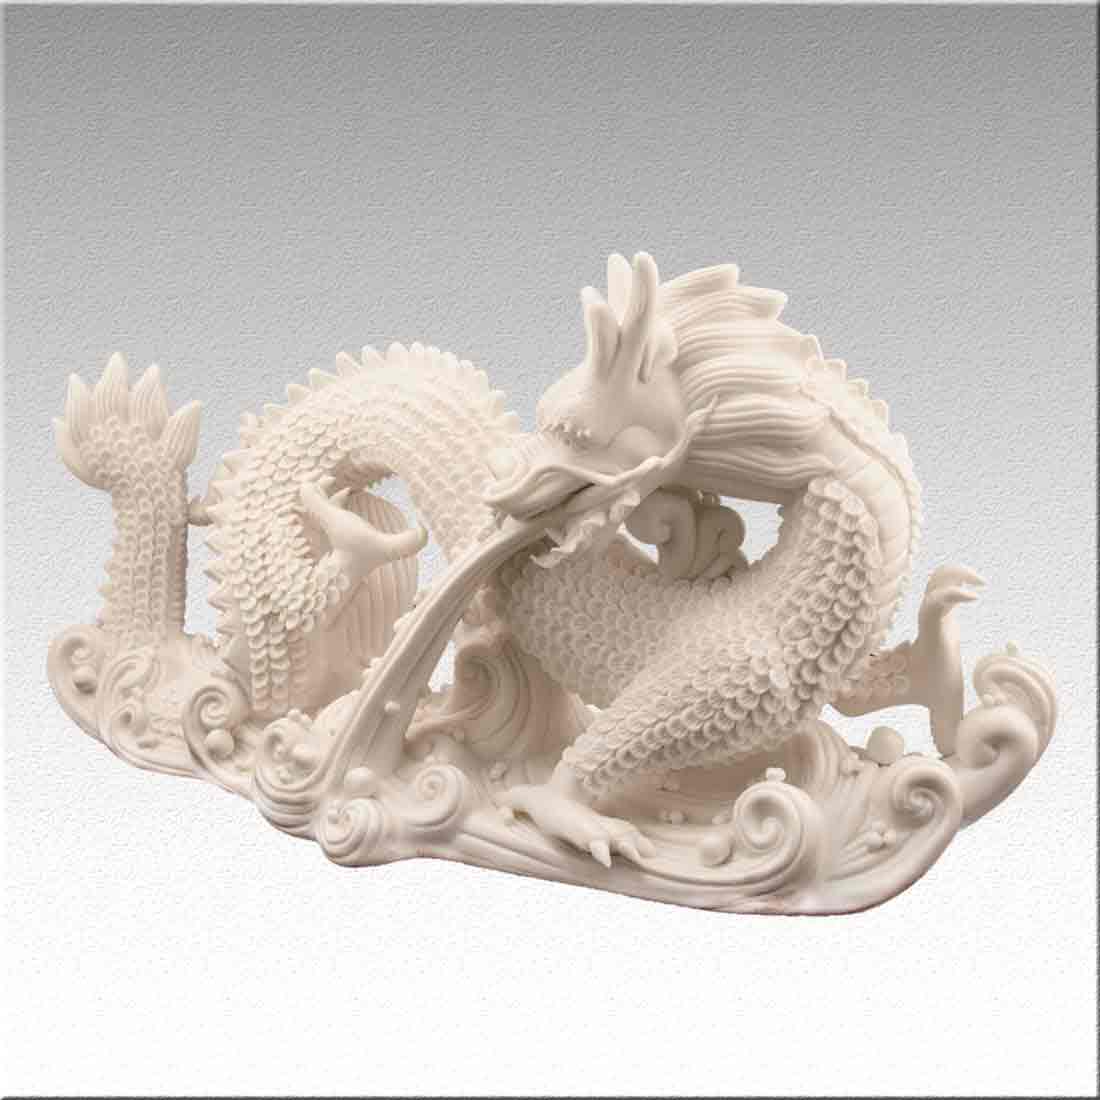 Статуэтка, фарфоровая "Дракон" - символ императорской власти в интернет-студии декора / шоурум | ChinaHouse.studio